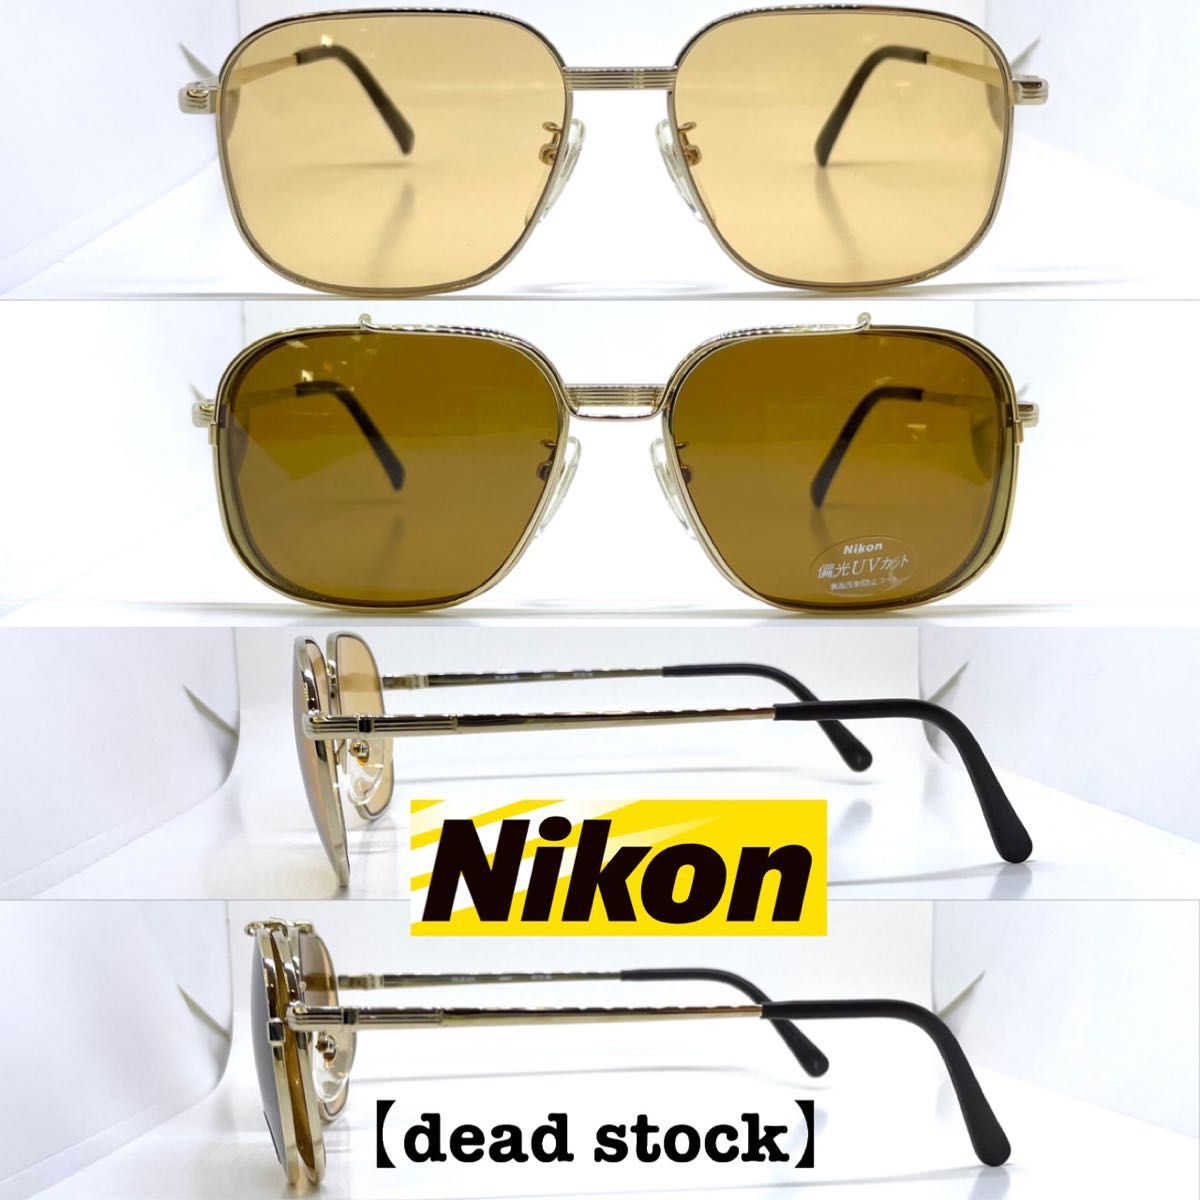 Nikon ニコン 前掛け偏光サングラス付き サングラス メガネフレーム 4441 ゴールド ブラウン偏光  着脱クリップ